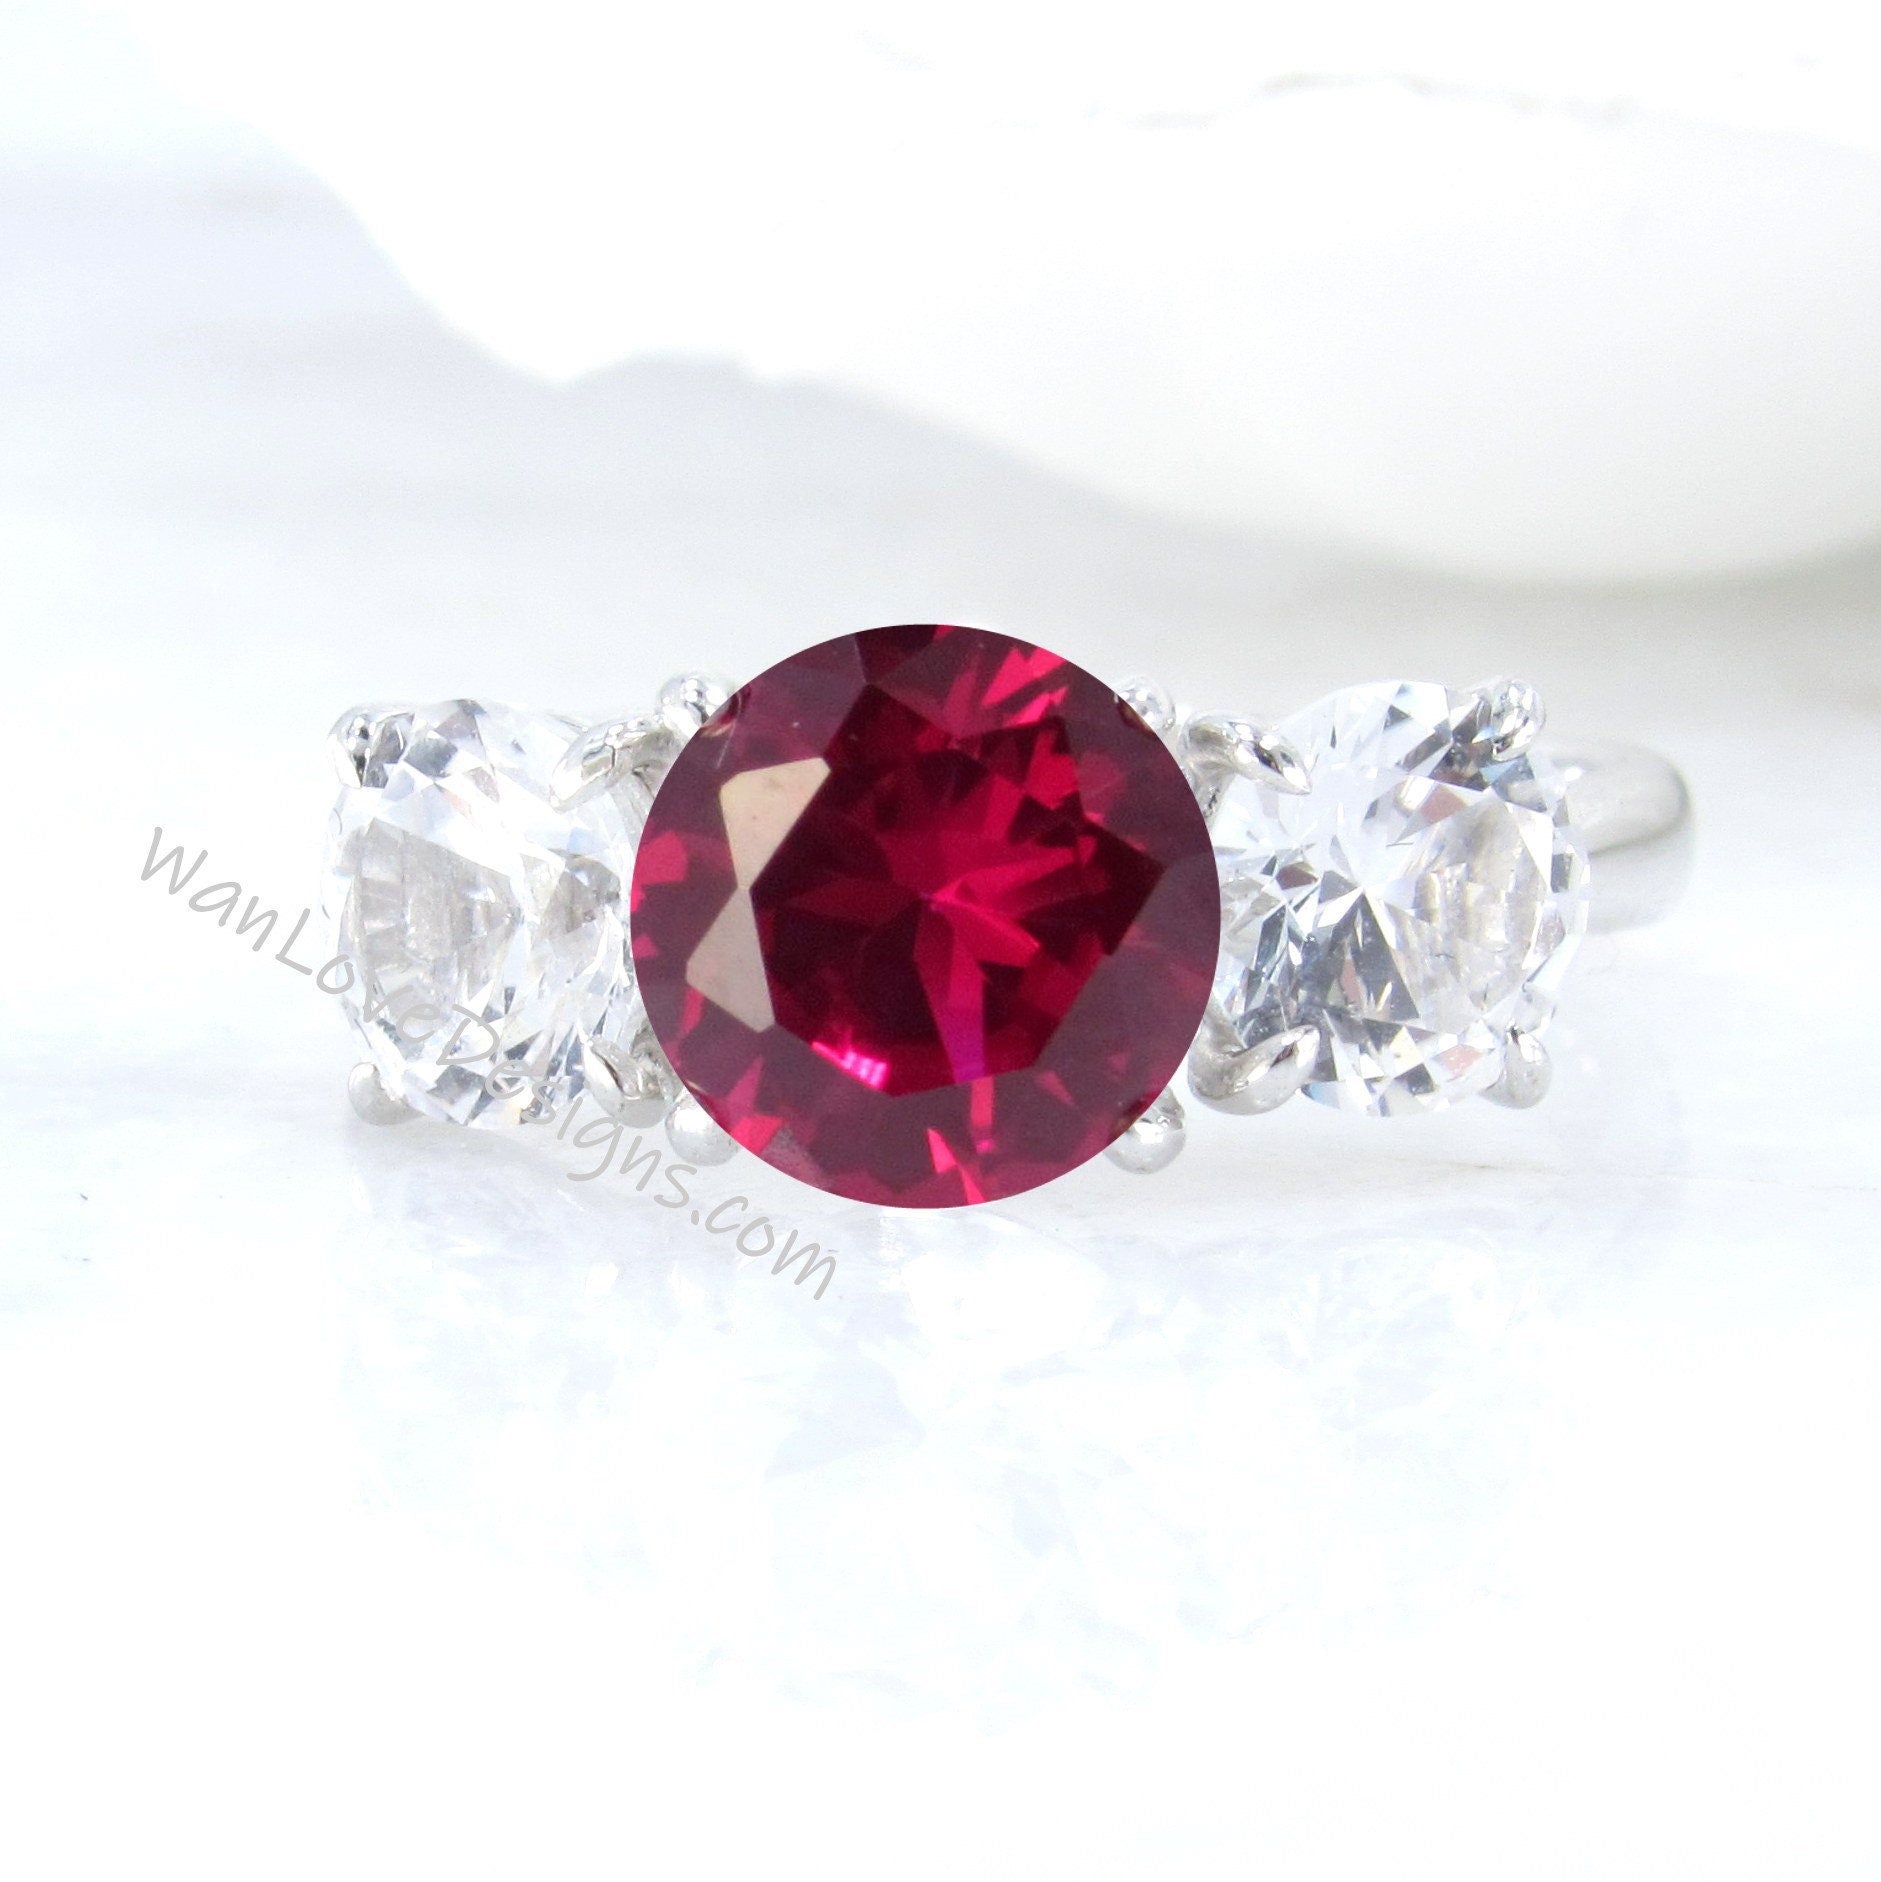 Ruby White Sapphire Moissanite 3 Stone Round Engagement Ring 14k 18k White Yellow Rose Gold Platinum Custom Anniversary Wan Love Designs